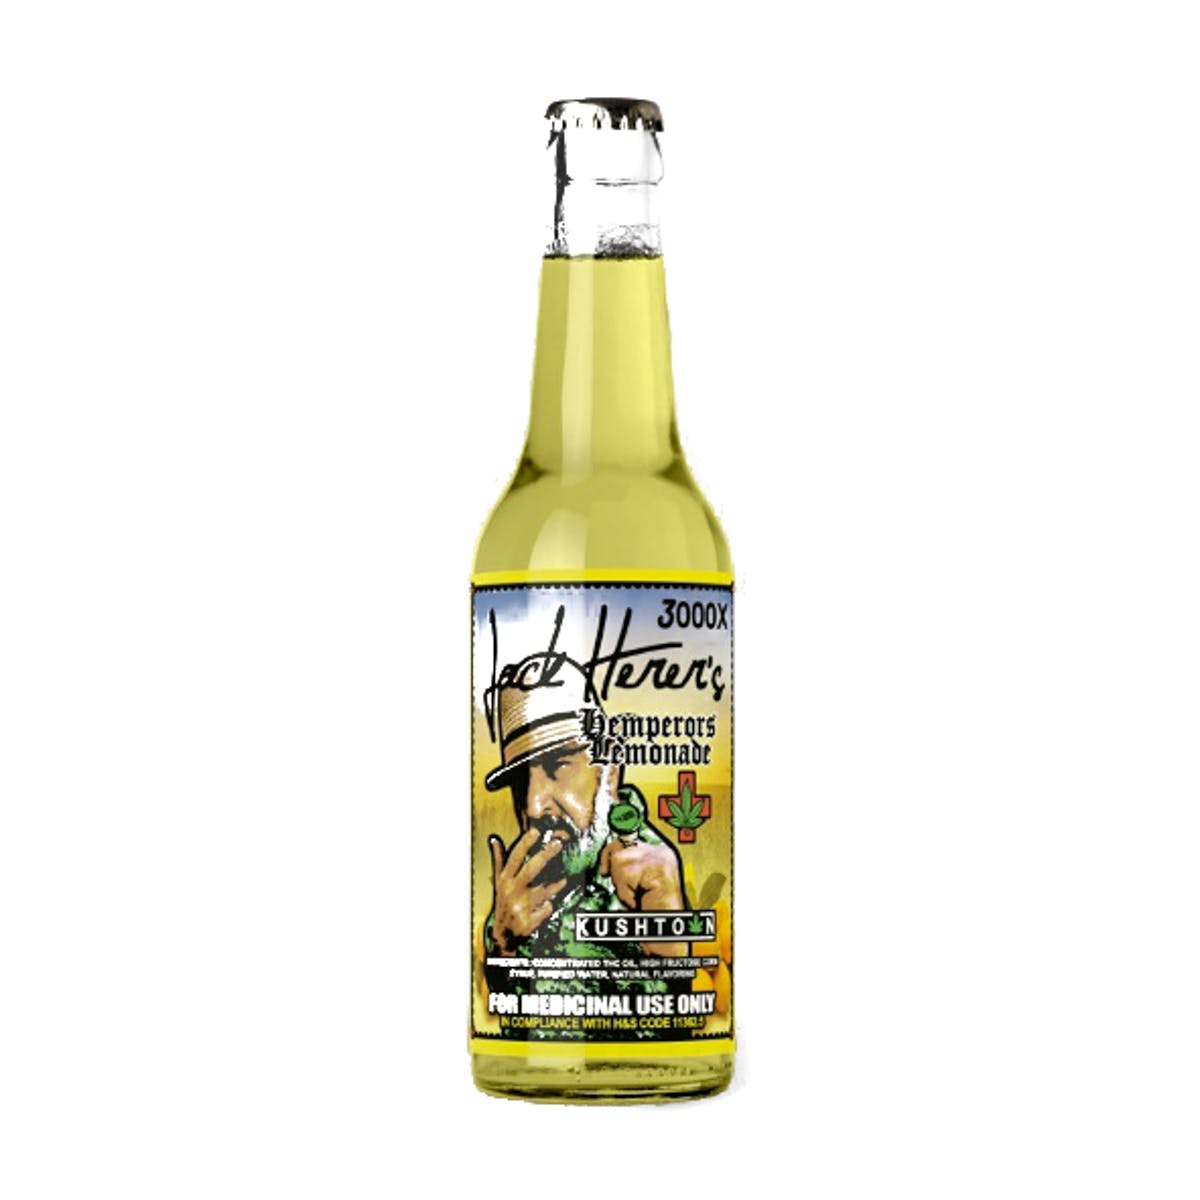 Jack Herer's Hemperors Lemonade